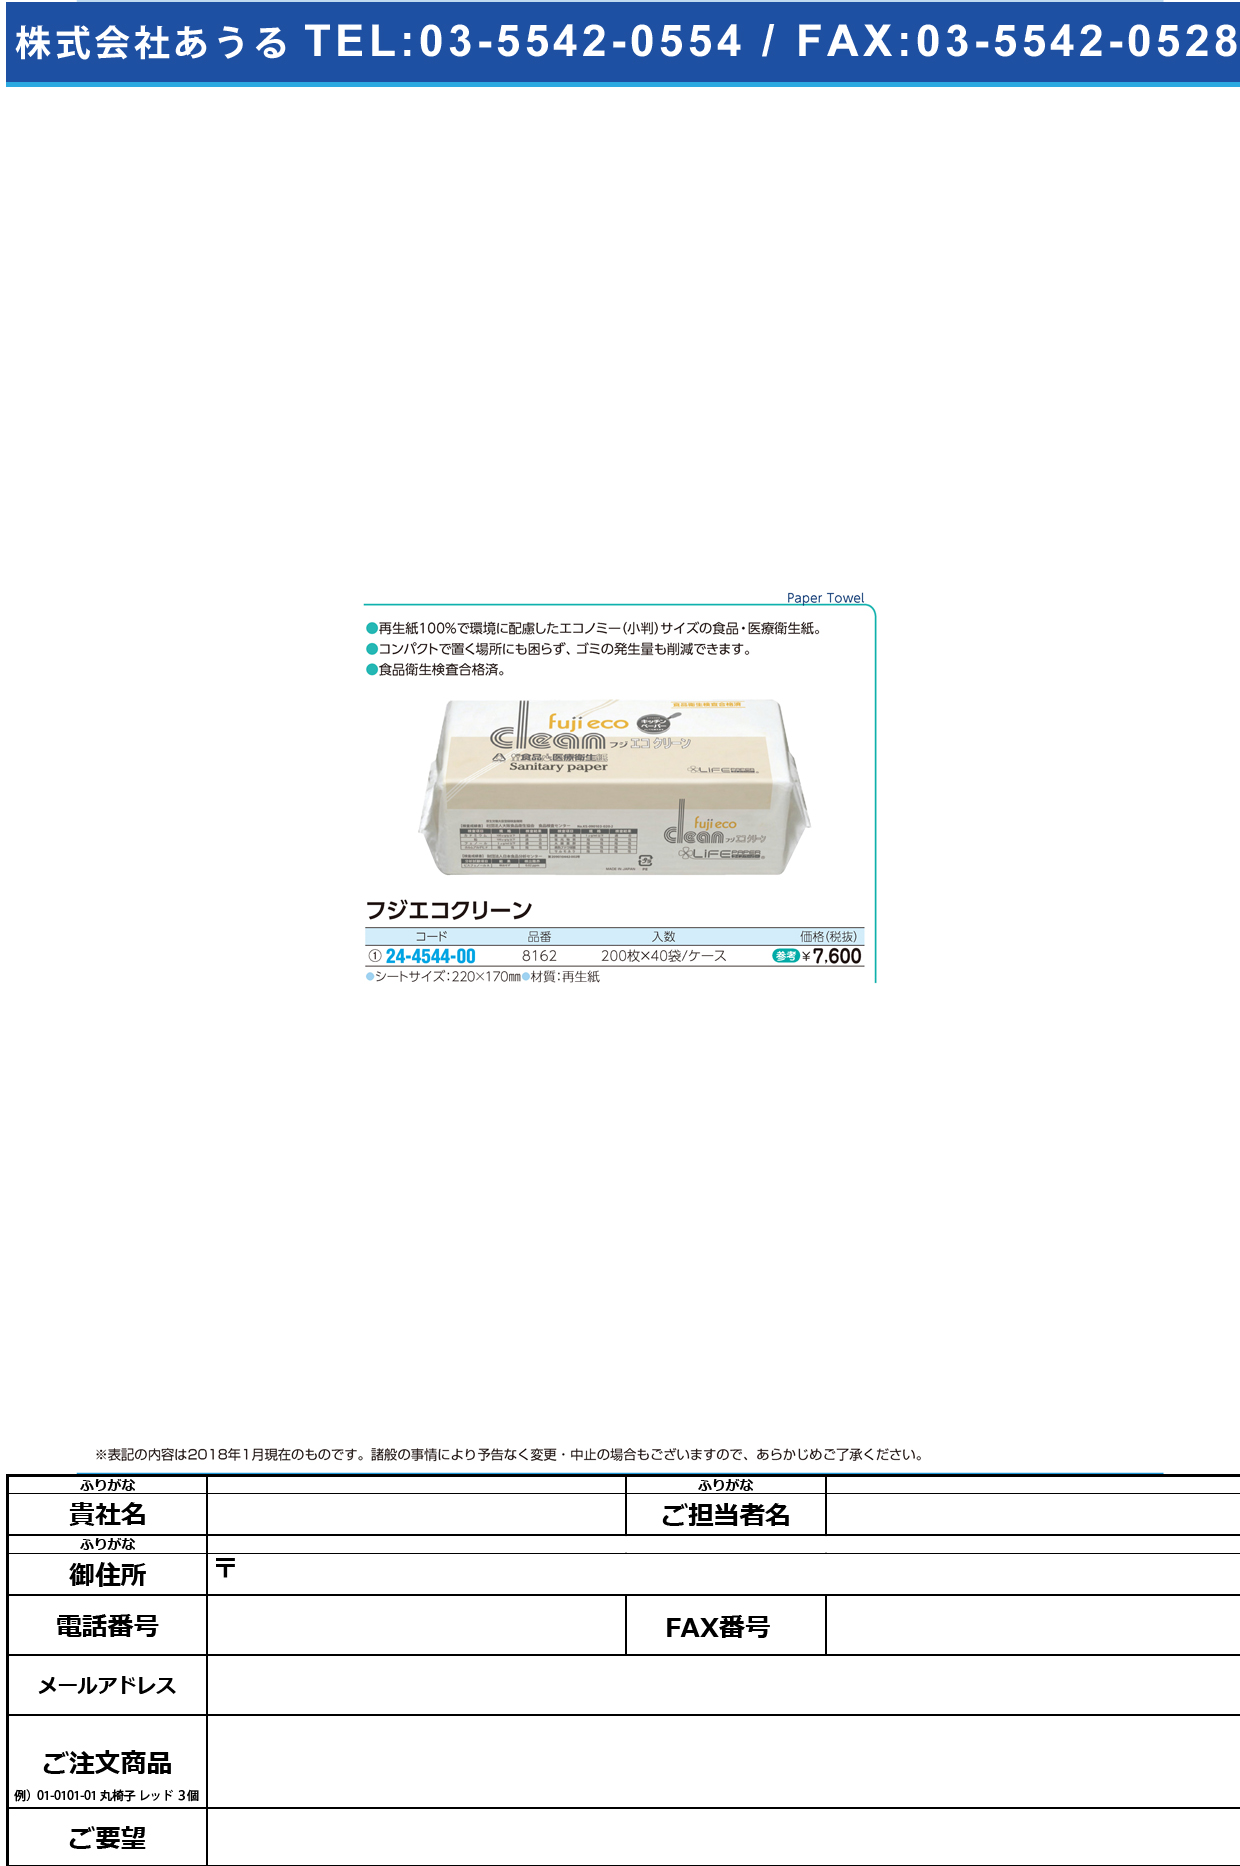 (24-4544-00)フジエコクリーン 220X170MM(200ﾏｲX40ﾌｸ ﾌｼﾞｴｺｸﾘｰﾝ【1箱単位】【2018年カタログ商品】